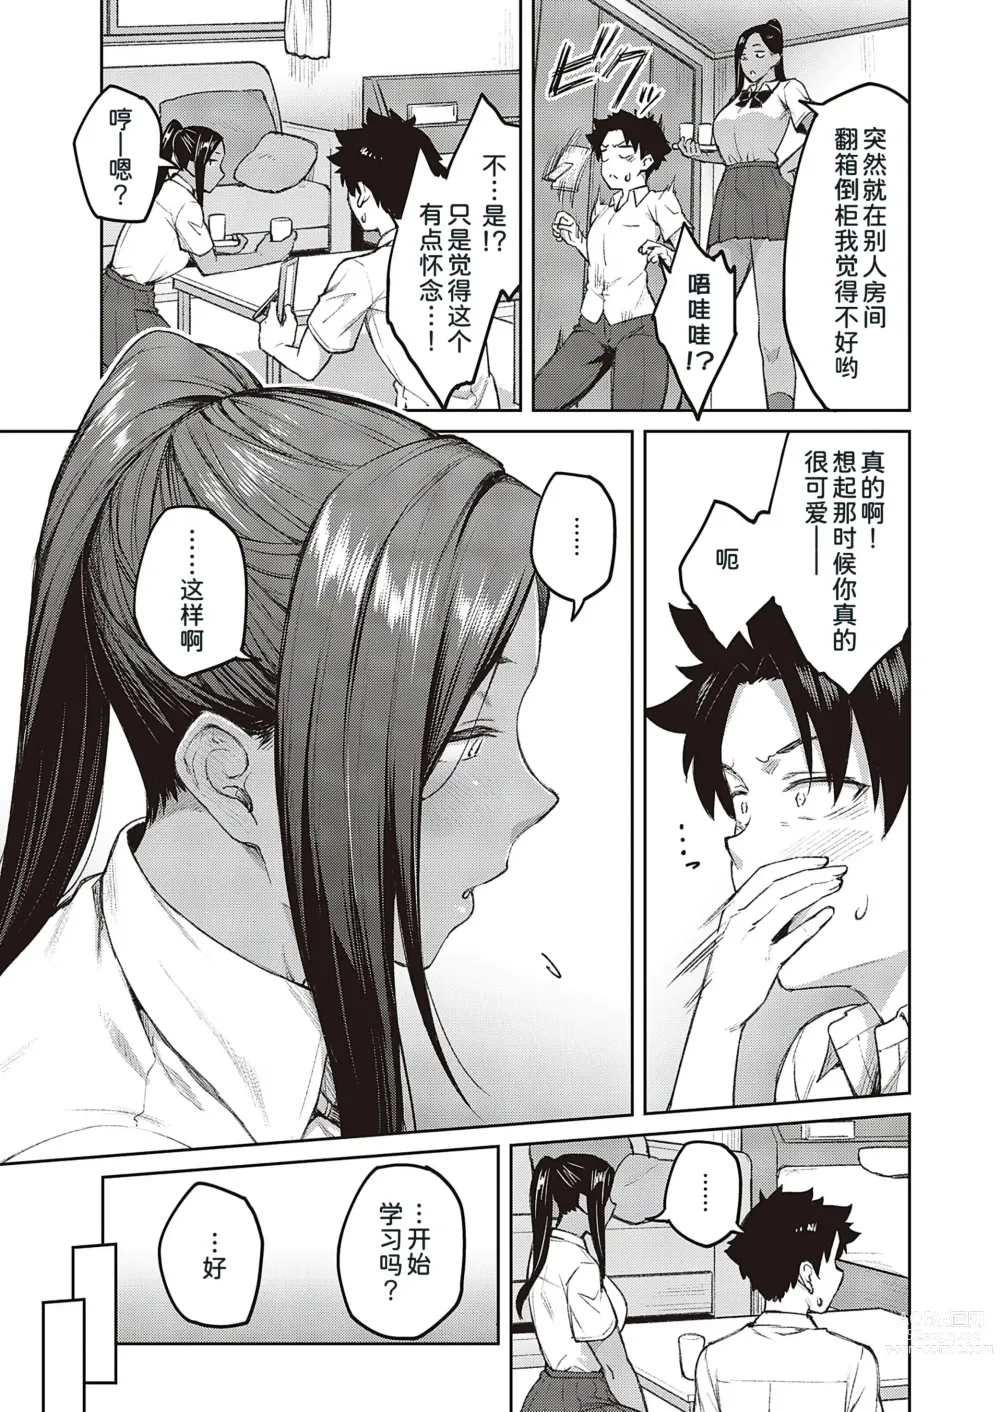 Page 12 of manga Tachiaoi 2